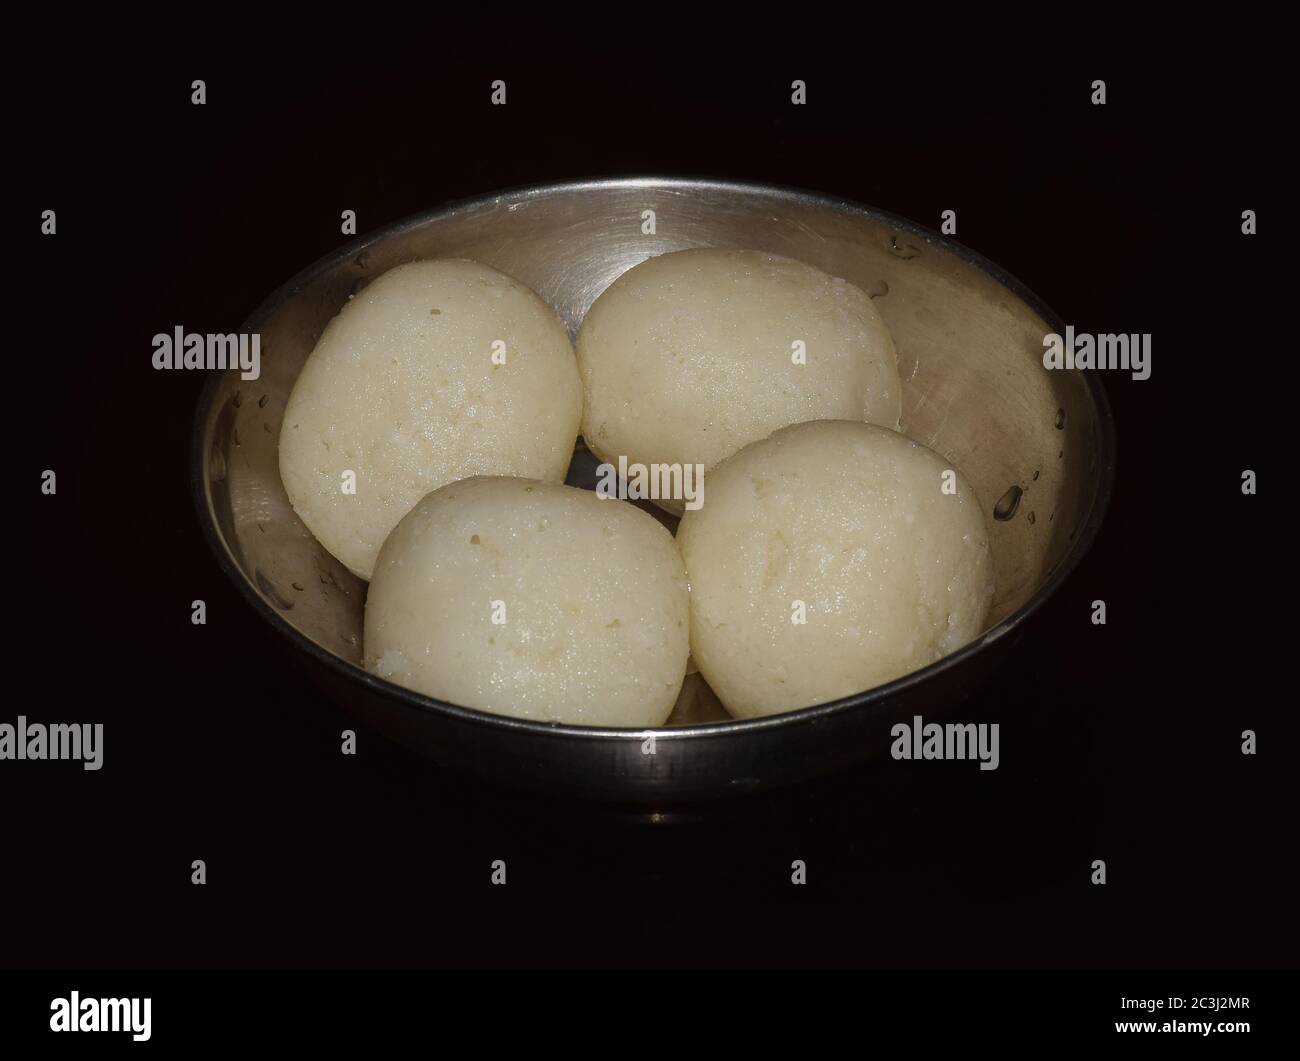 Rosogulla oder Rasgulla (süße Quark-Kugeln) eine bengalische Delikatesse, die auf einer Stahlschüssel serviert wird. Bengalische Küche/Indische Süßigkeiten Stockfoto